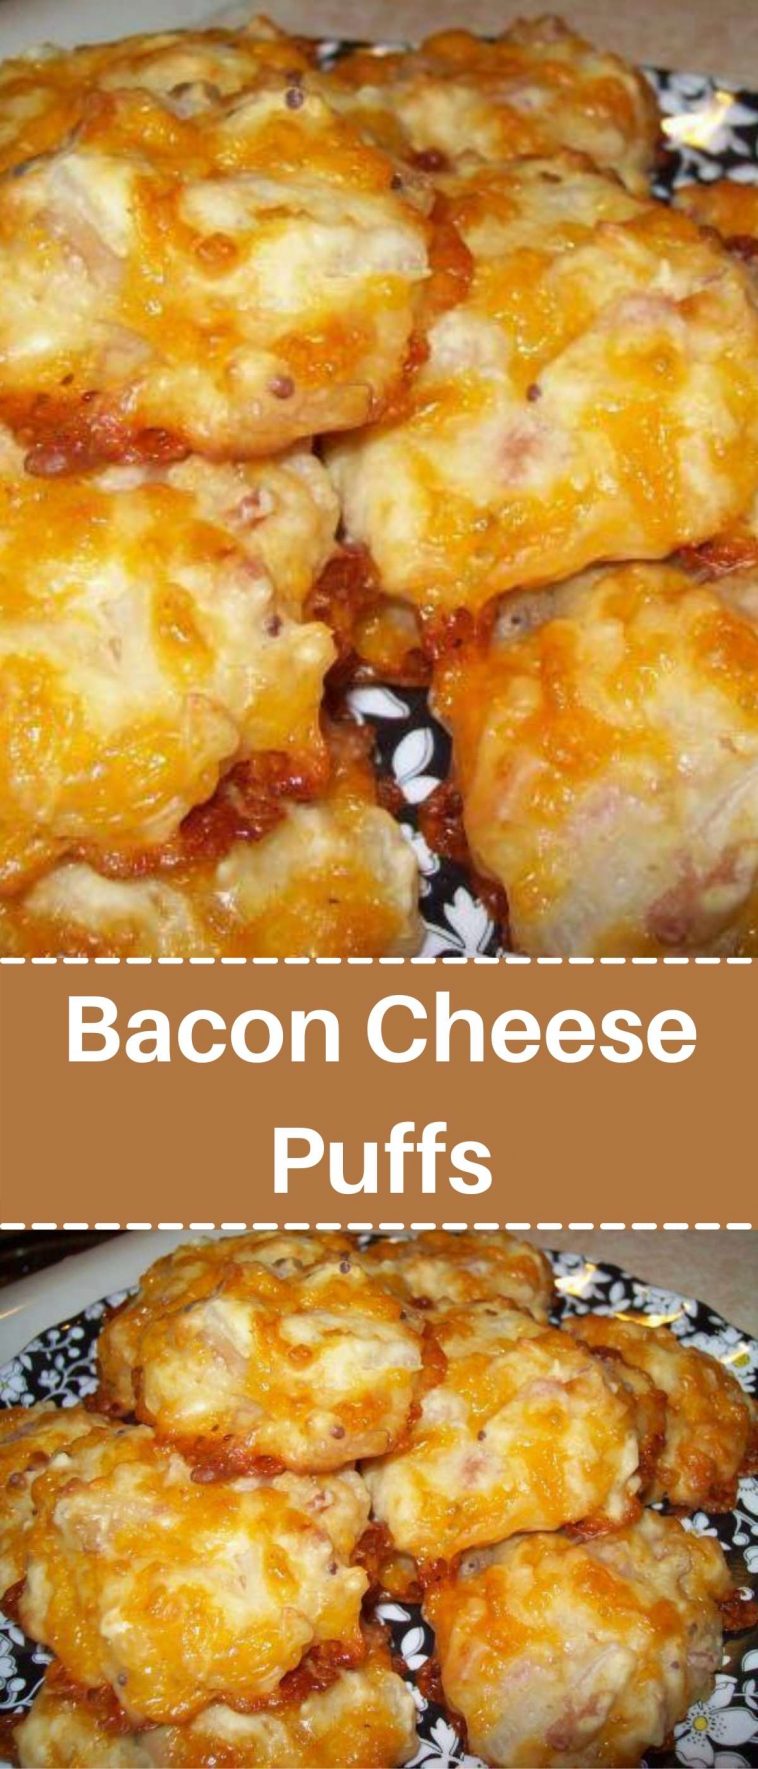 Bacon Cheese Puffs